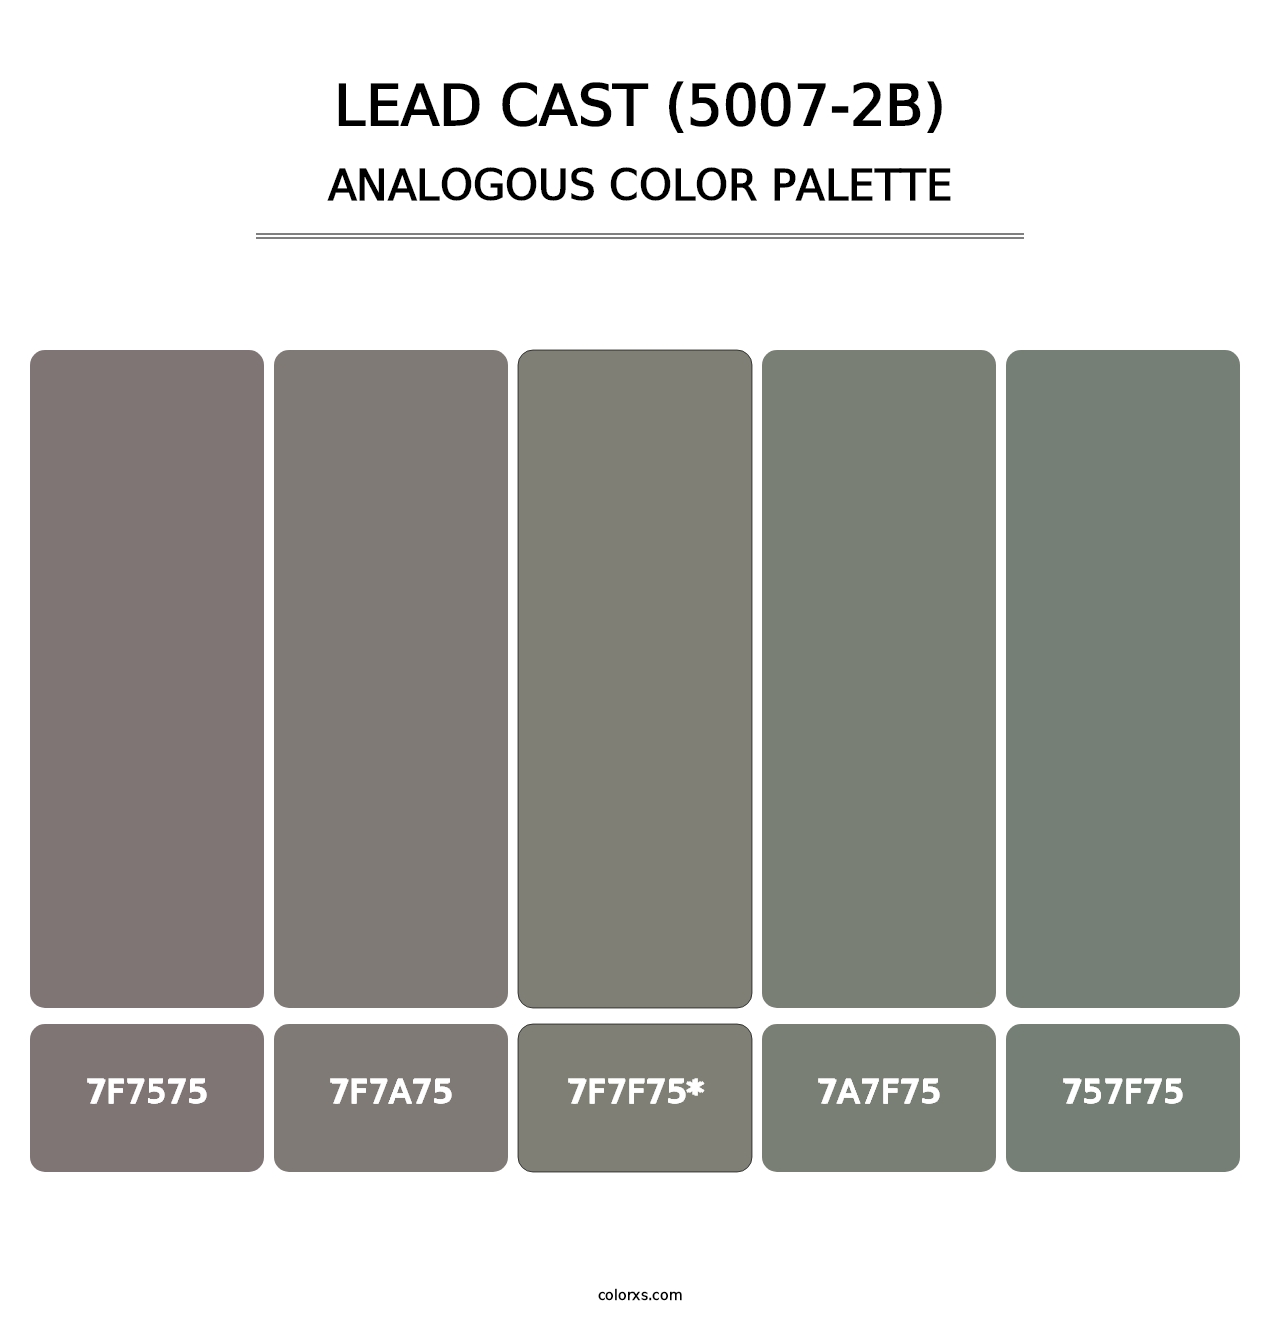 Lead Cast (5007-2B) - Analogous Color Palette